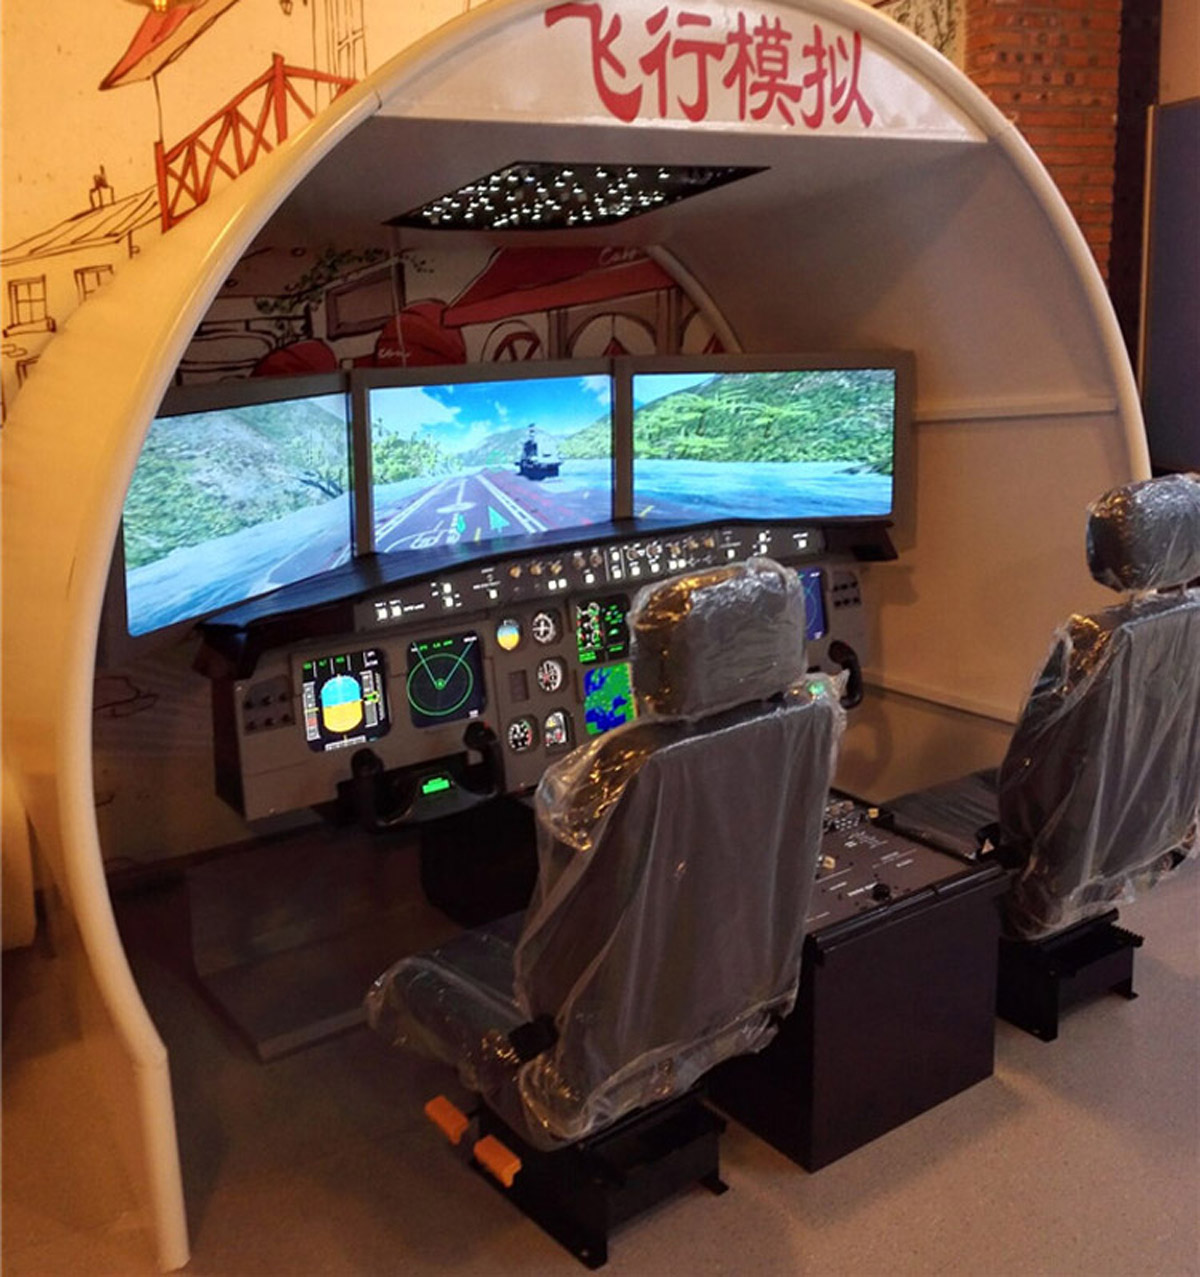 闵行区展览展示空客飞行模拟器